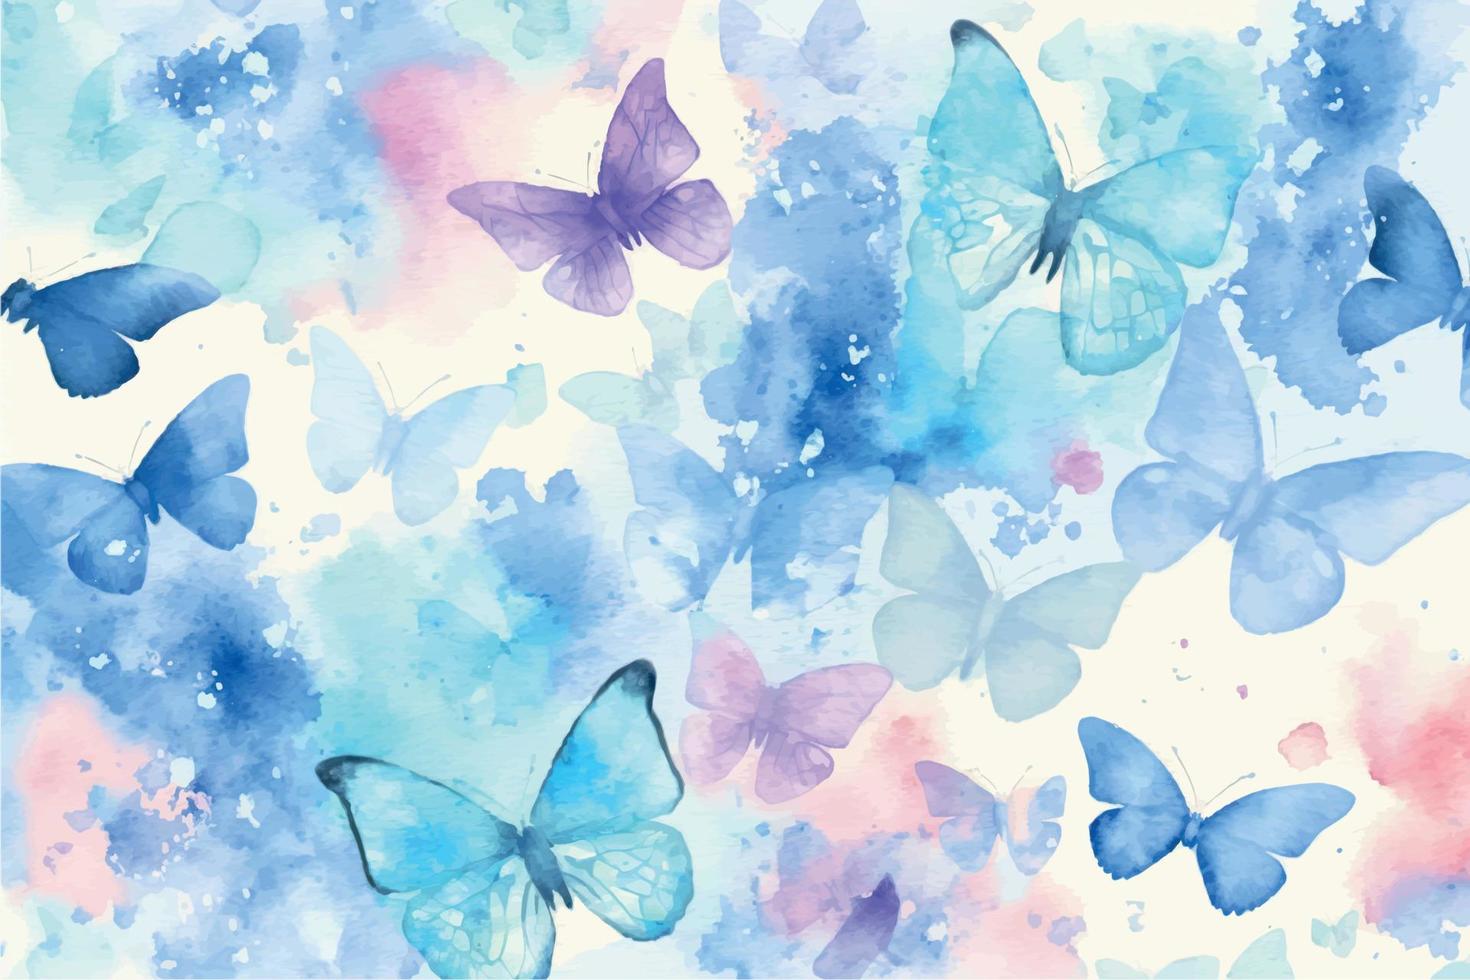 borboletas em aquarela desenhadas à mão vetor